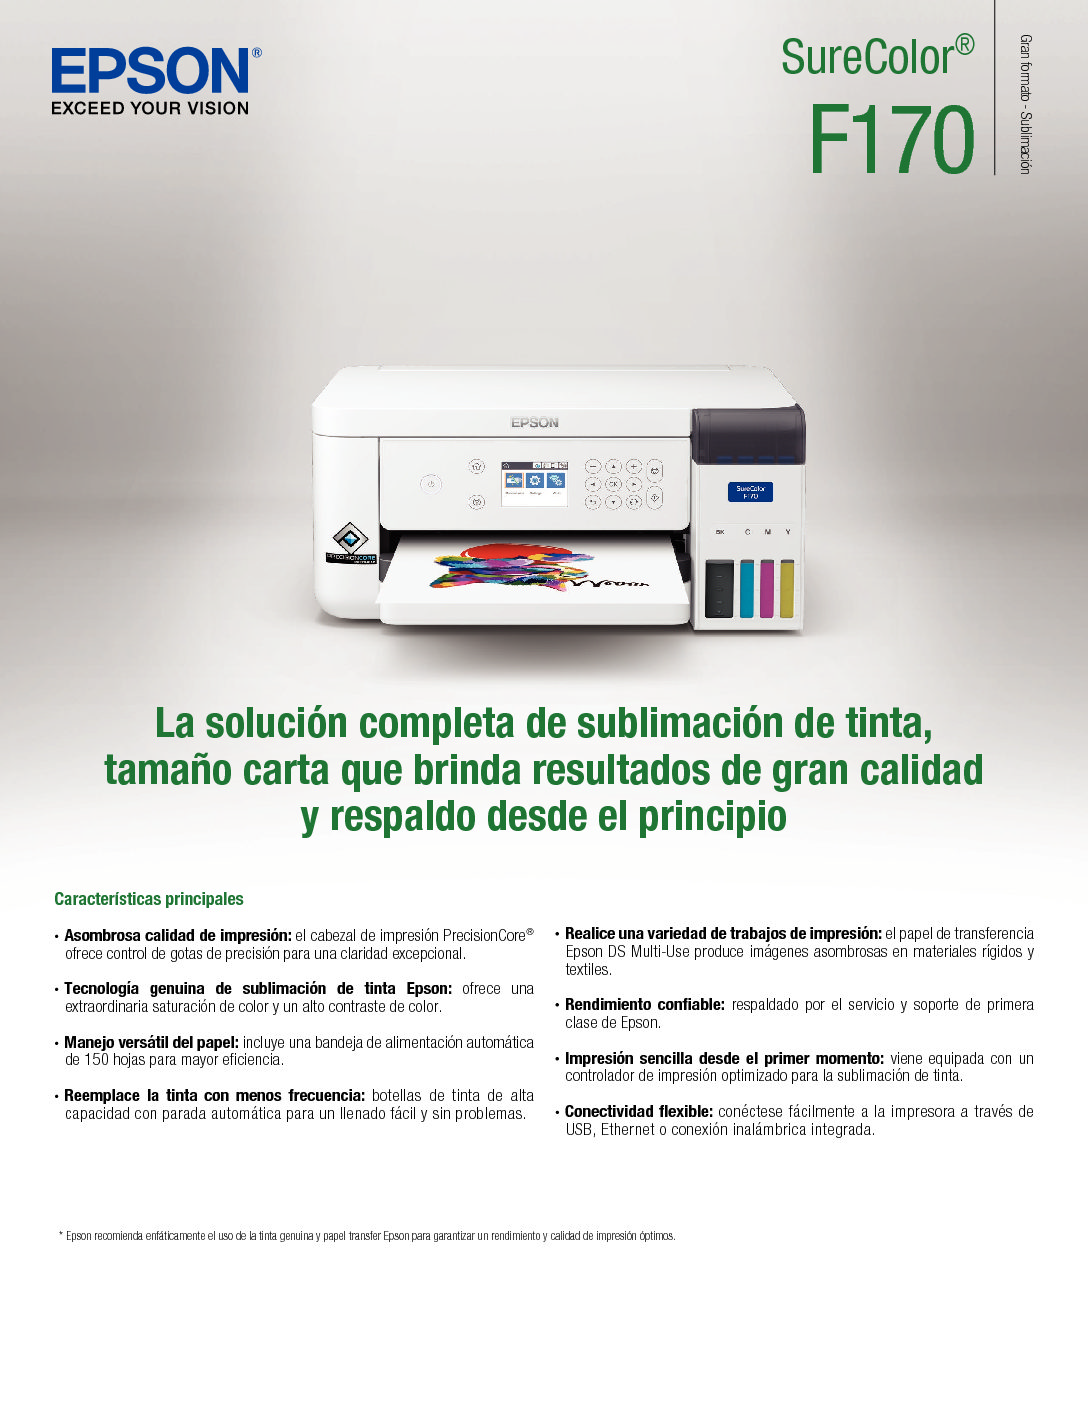 Impresora de Sublimación de Tinta SureColor EPSON F170, Inalámbrica, Usb –